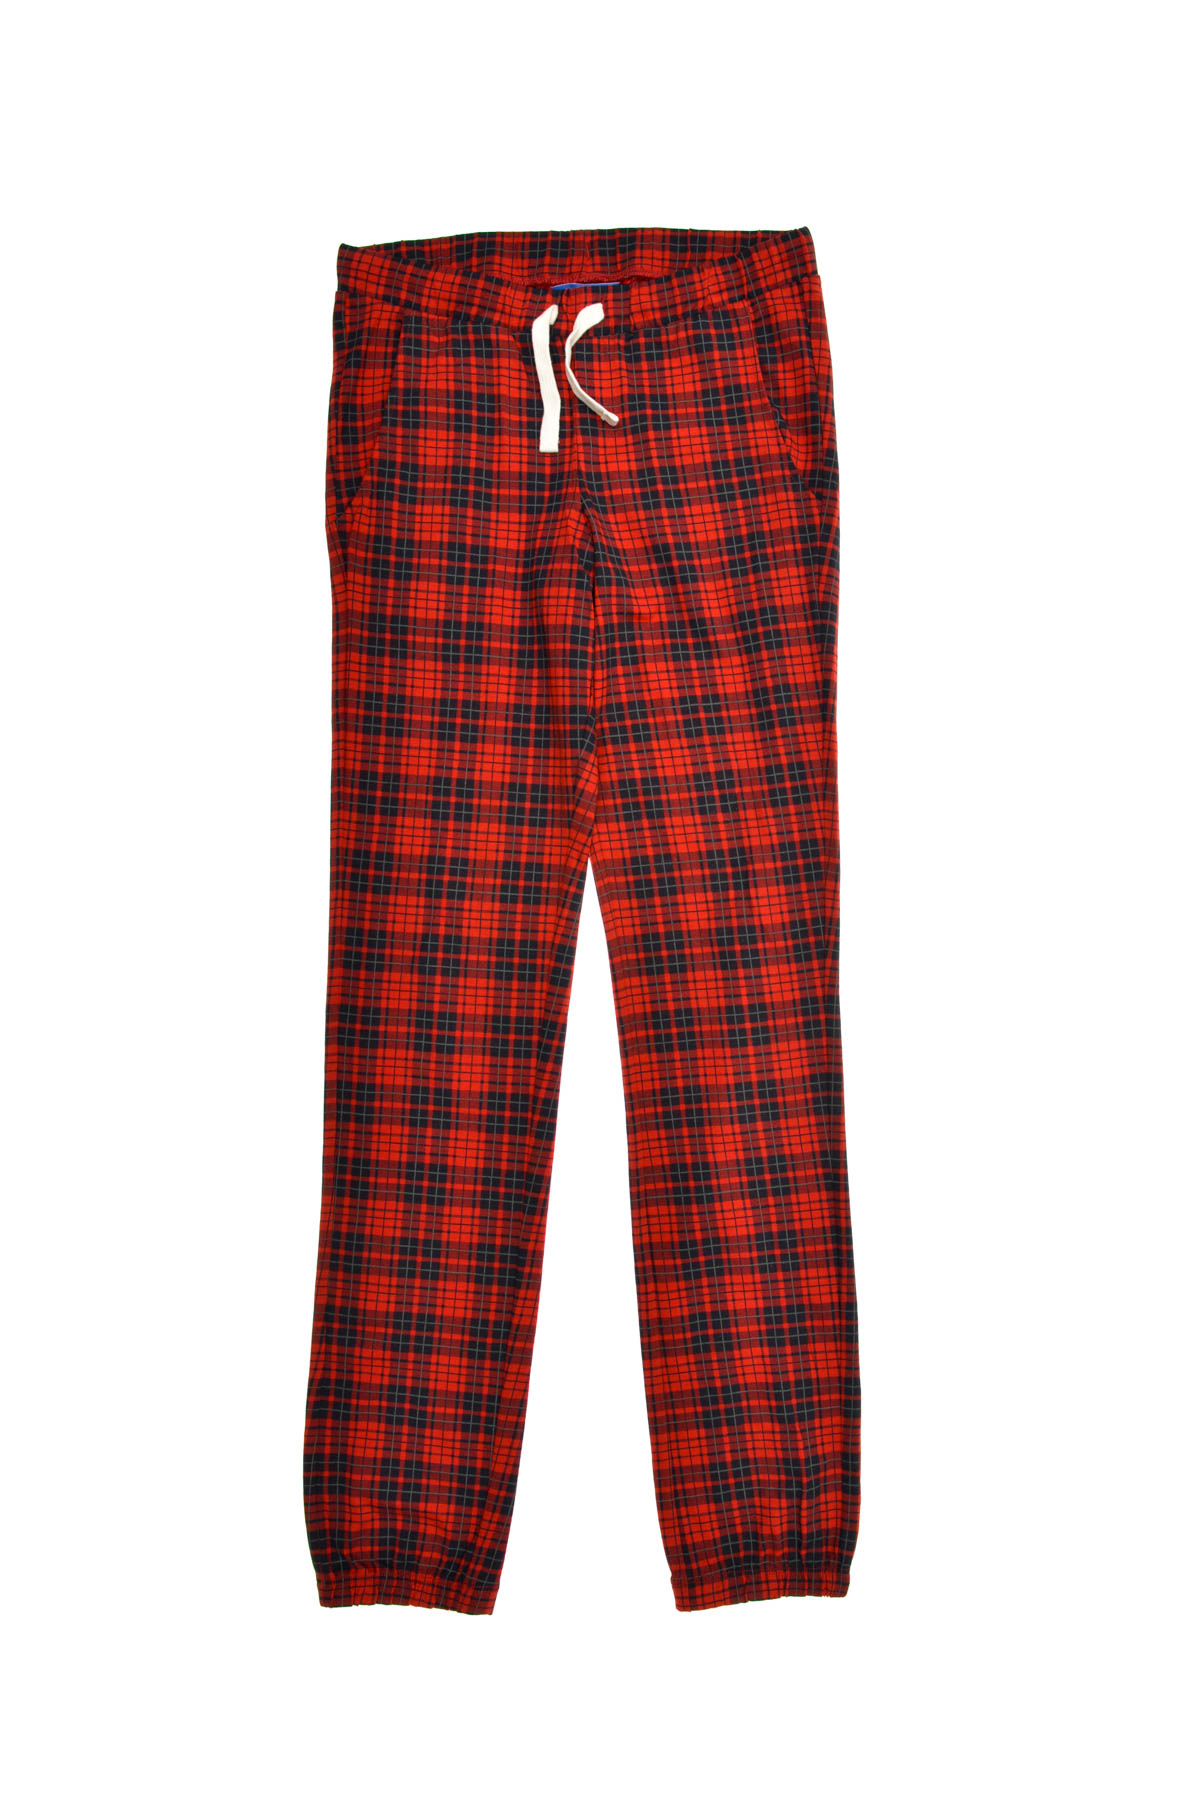 Pijama pentru băiat - JACK & JONES - 0